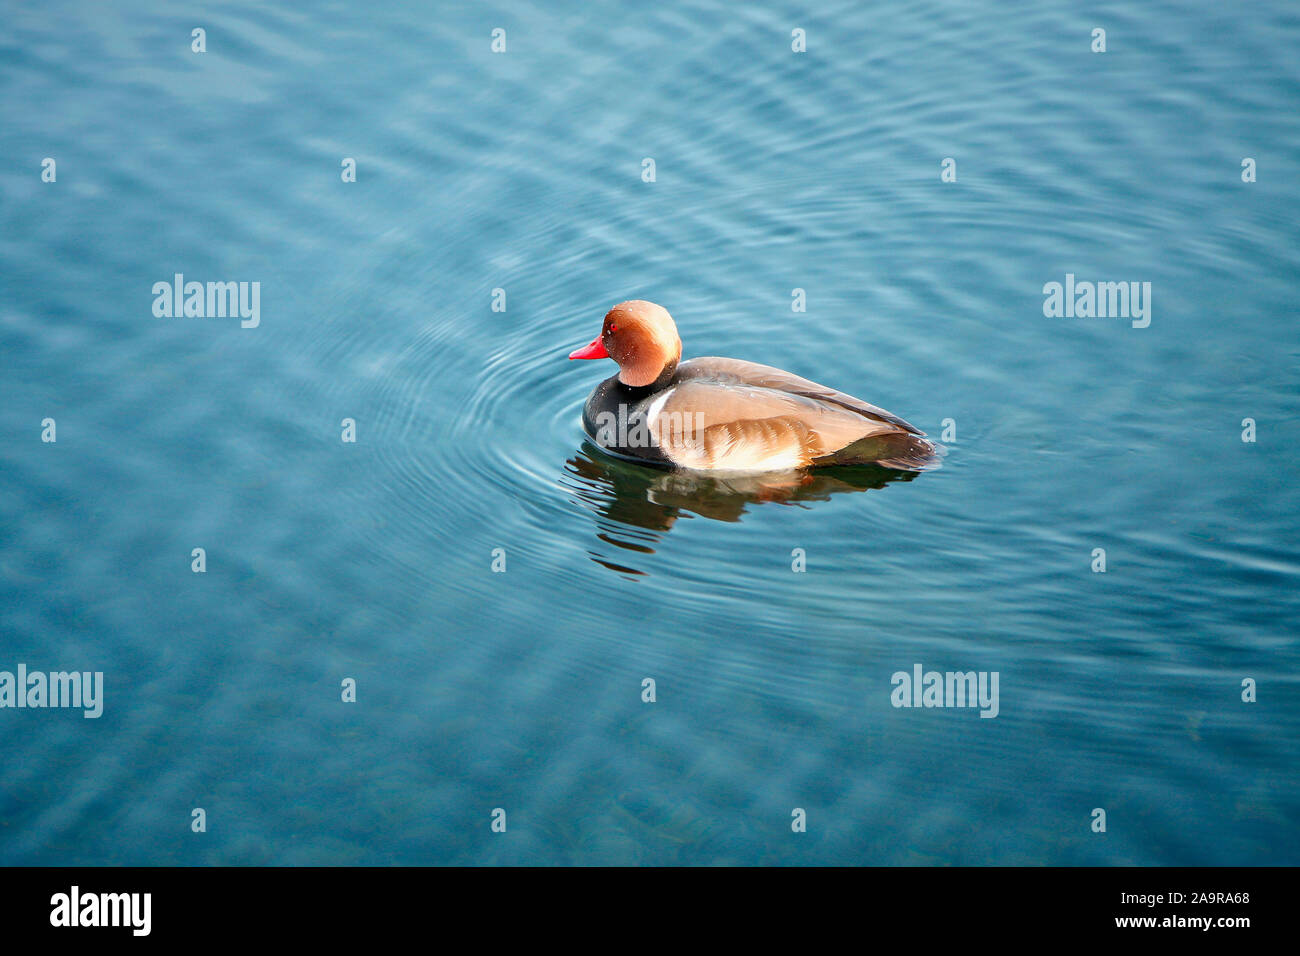 Eine schoene Ente Wasser im Foto Stock